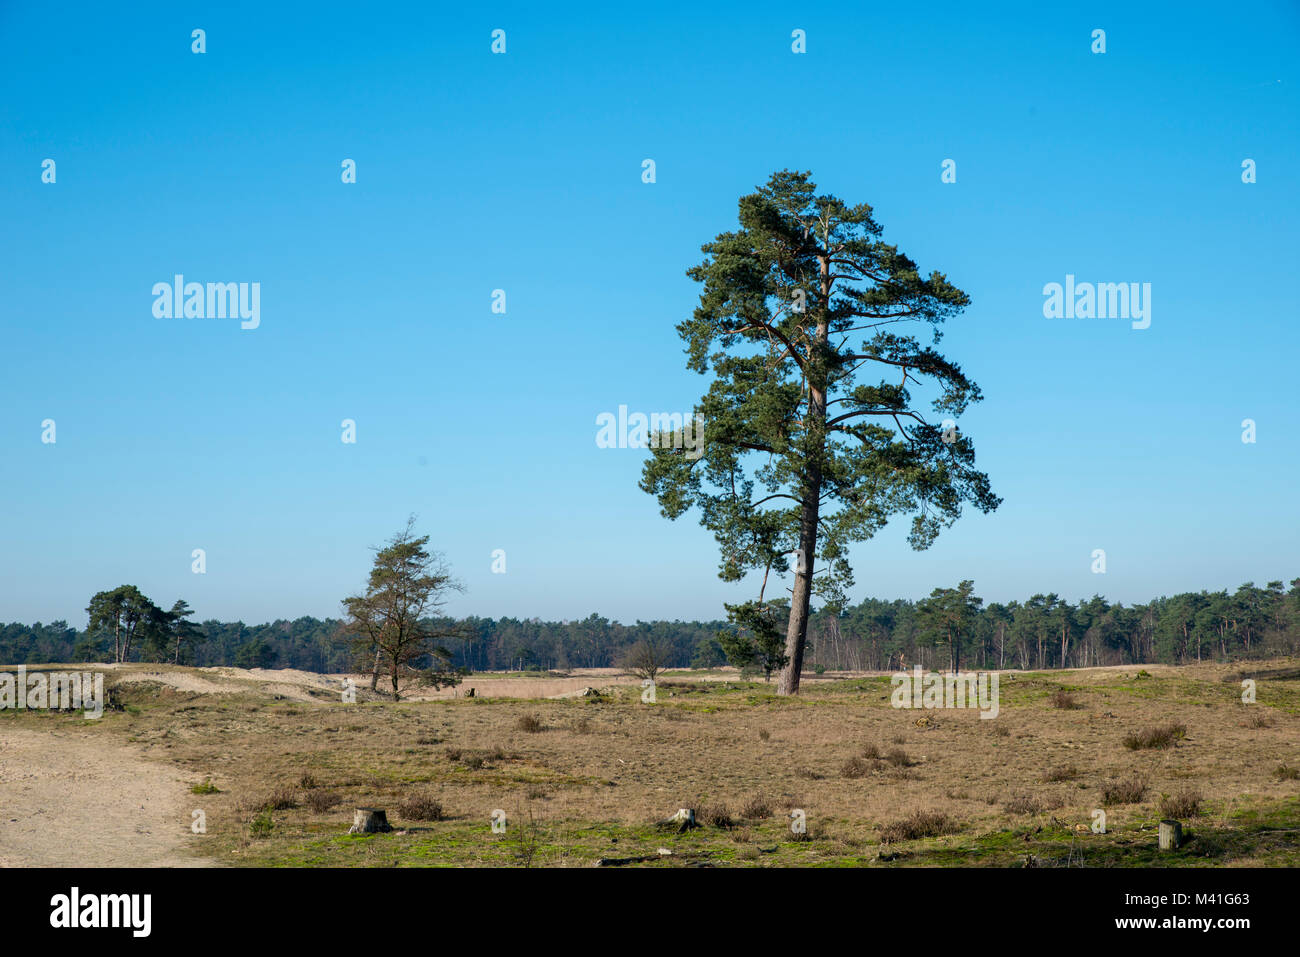 Das ist es, was die Dünen von Loon und Drunen Nationalpark ist, mitten in der Provinz Noord-Brabant. Einer der größten Holland natürliche Bereiche Stockfoto